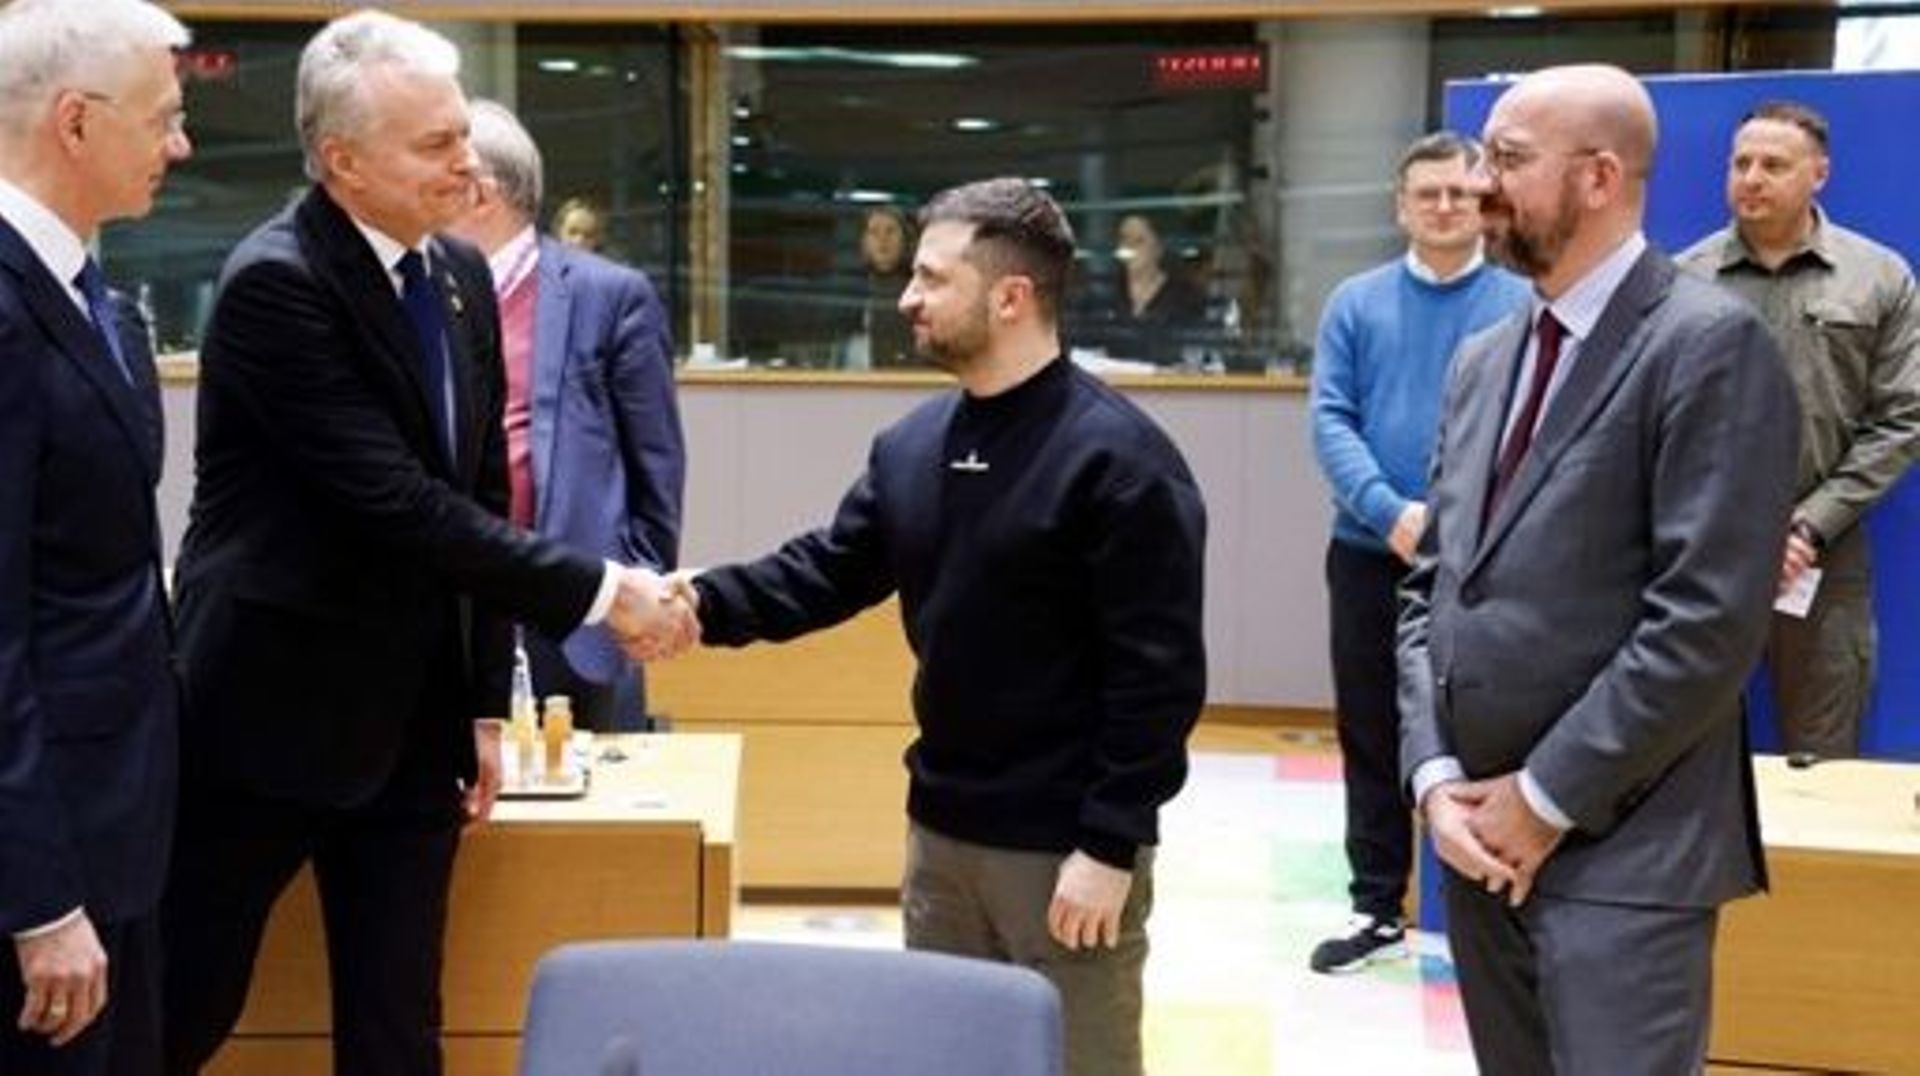 Le président ukrainien, Volodymyr Zelensky (C), serre la main du président lituanien, Gitanas Nauseda, sous le regard du Premier ministre letton, Krisjanis Karins (L), avant une table ronde organisée dans le cadre d’un sommet européen à Bruxelles, le 9 fé